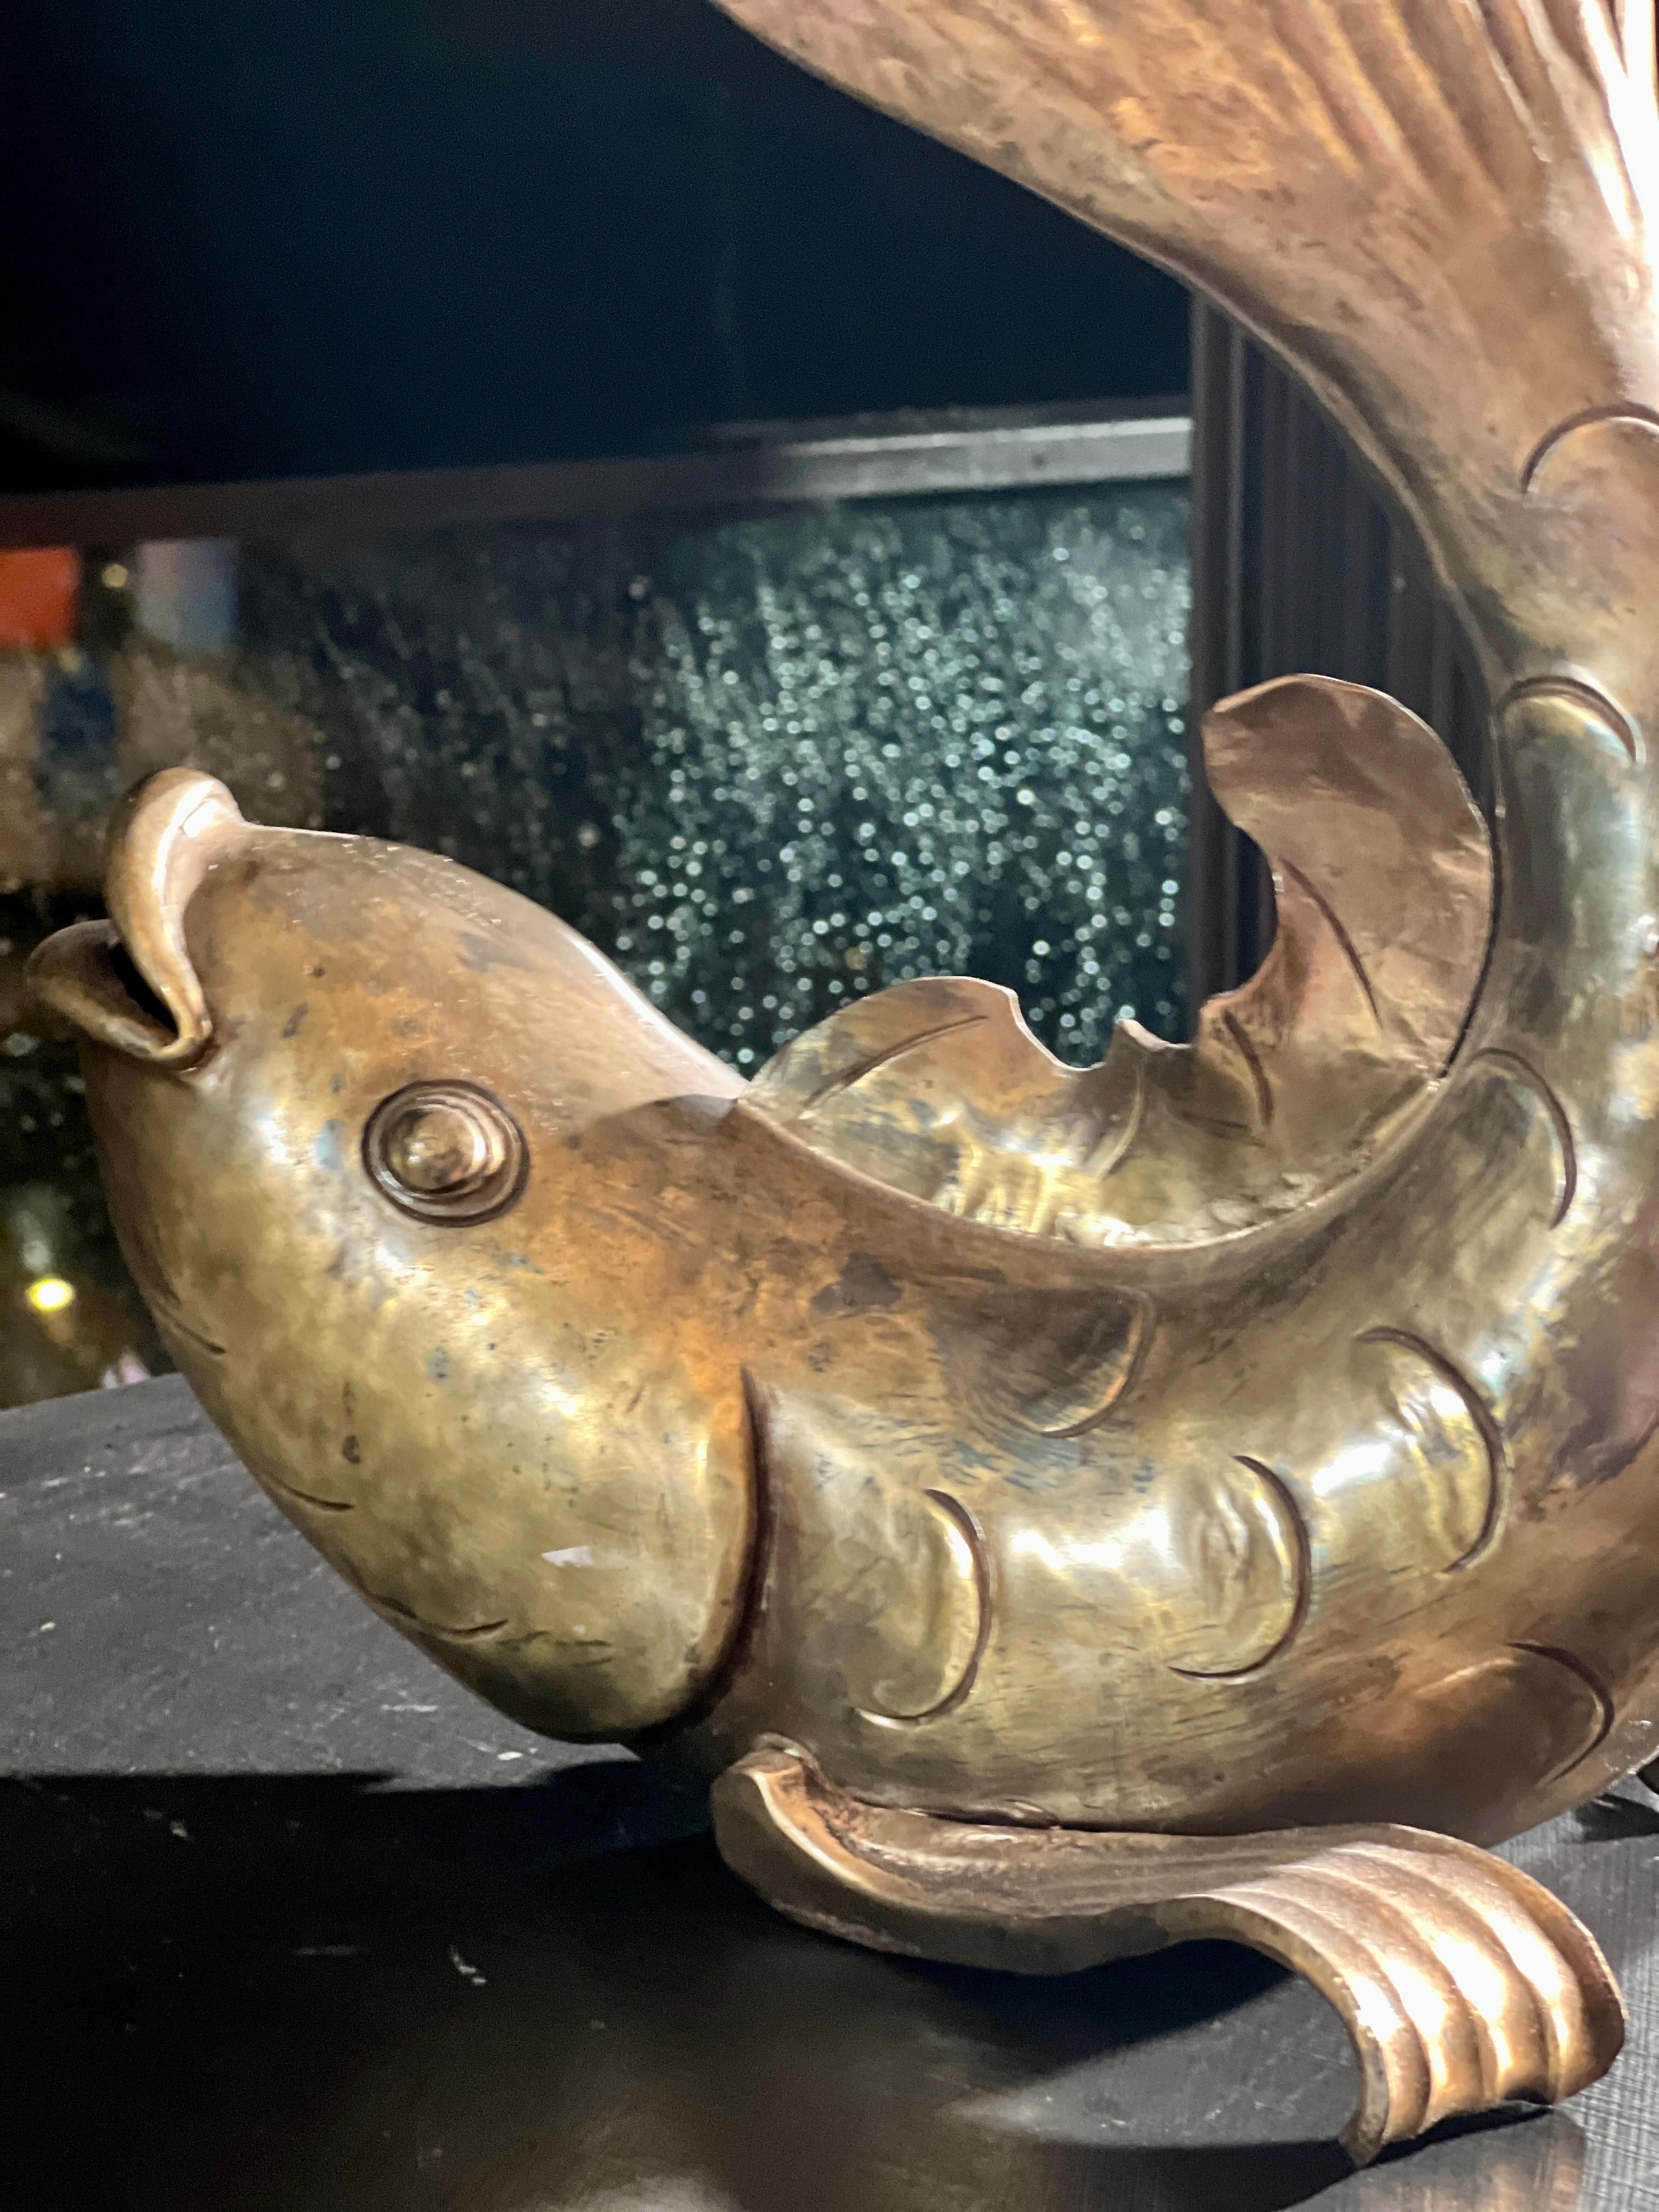 Majesté aquatique dorée : Un fascinant poisson en bronze orne gracieusement une table exquise.

Dans le cadre opulent d'une somptueuse maison de famille européenne, ornée d'œuvres d'art exquises et de trésors rares, trônait une magnifique statue